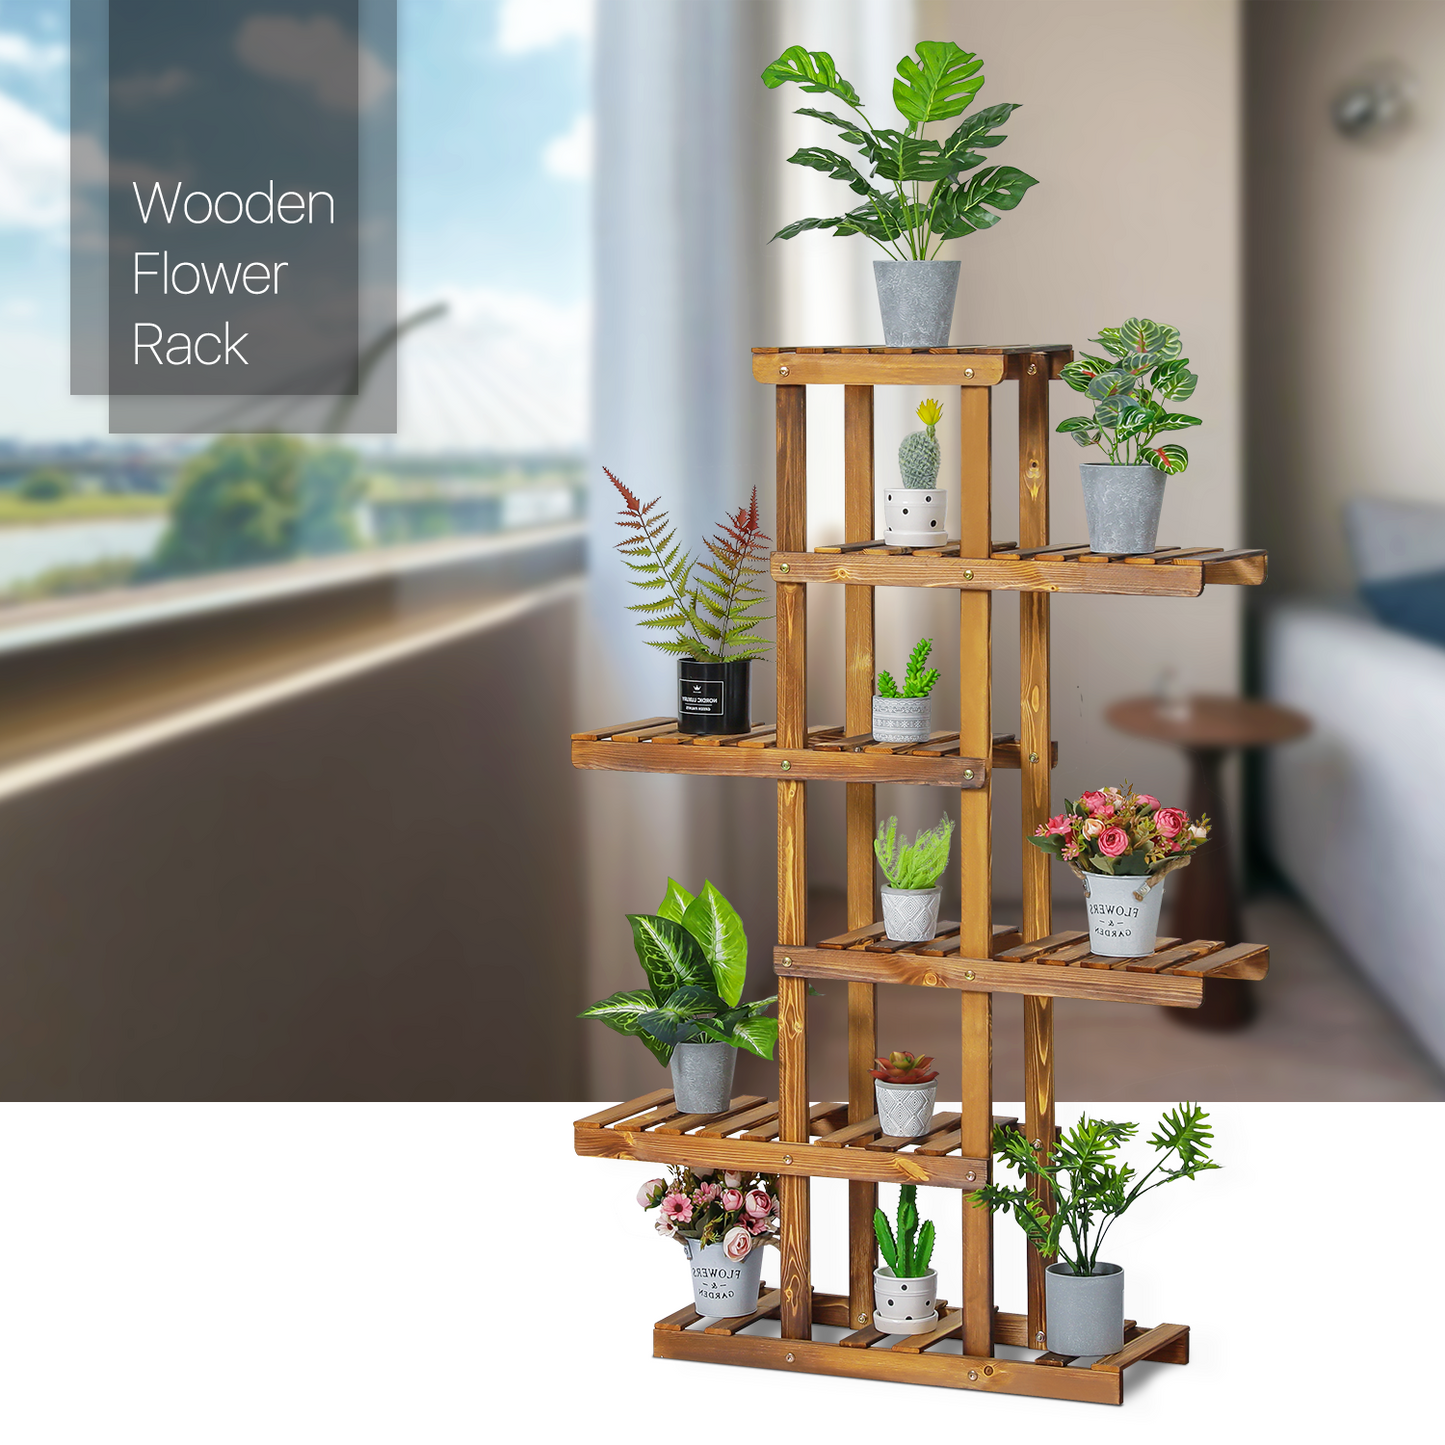 Flower Plant Stand Display Shelf - Zip-Zag Layer - 6 Tier - Carbonized